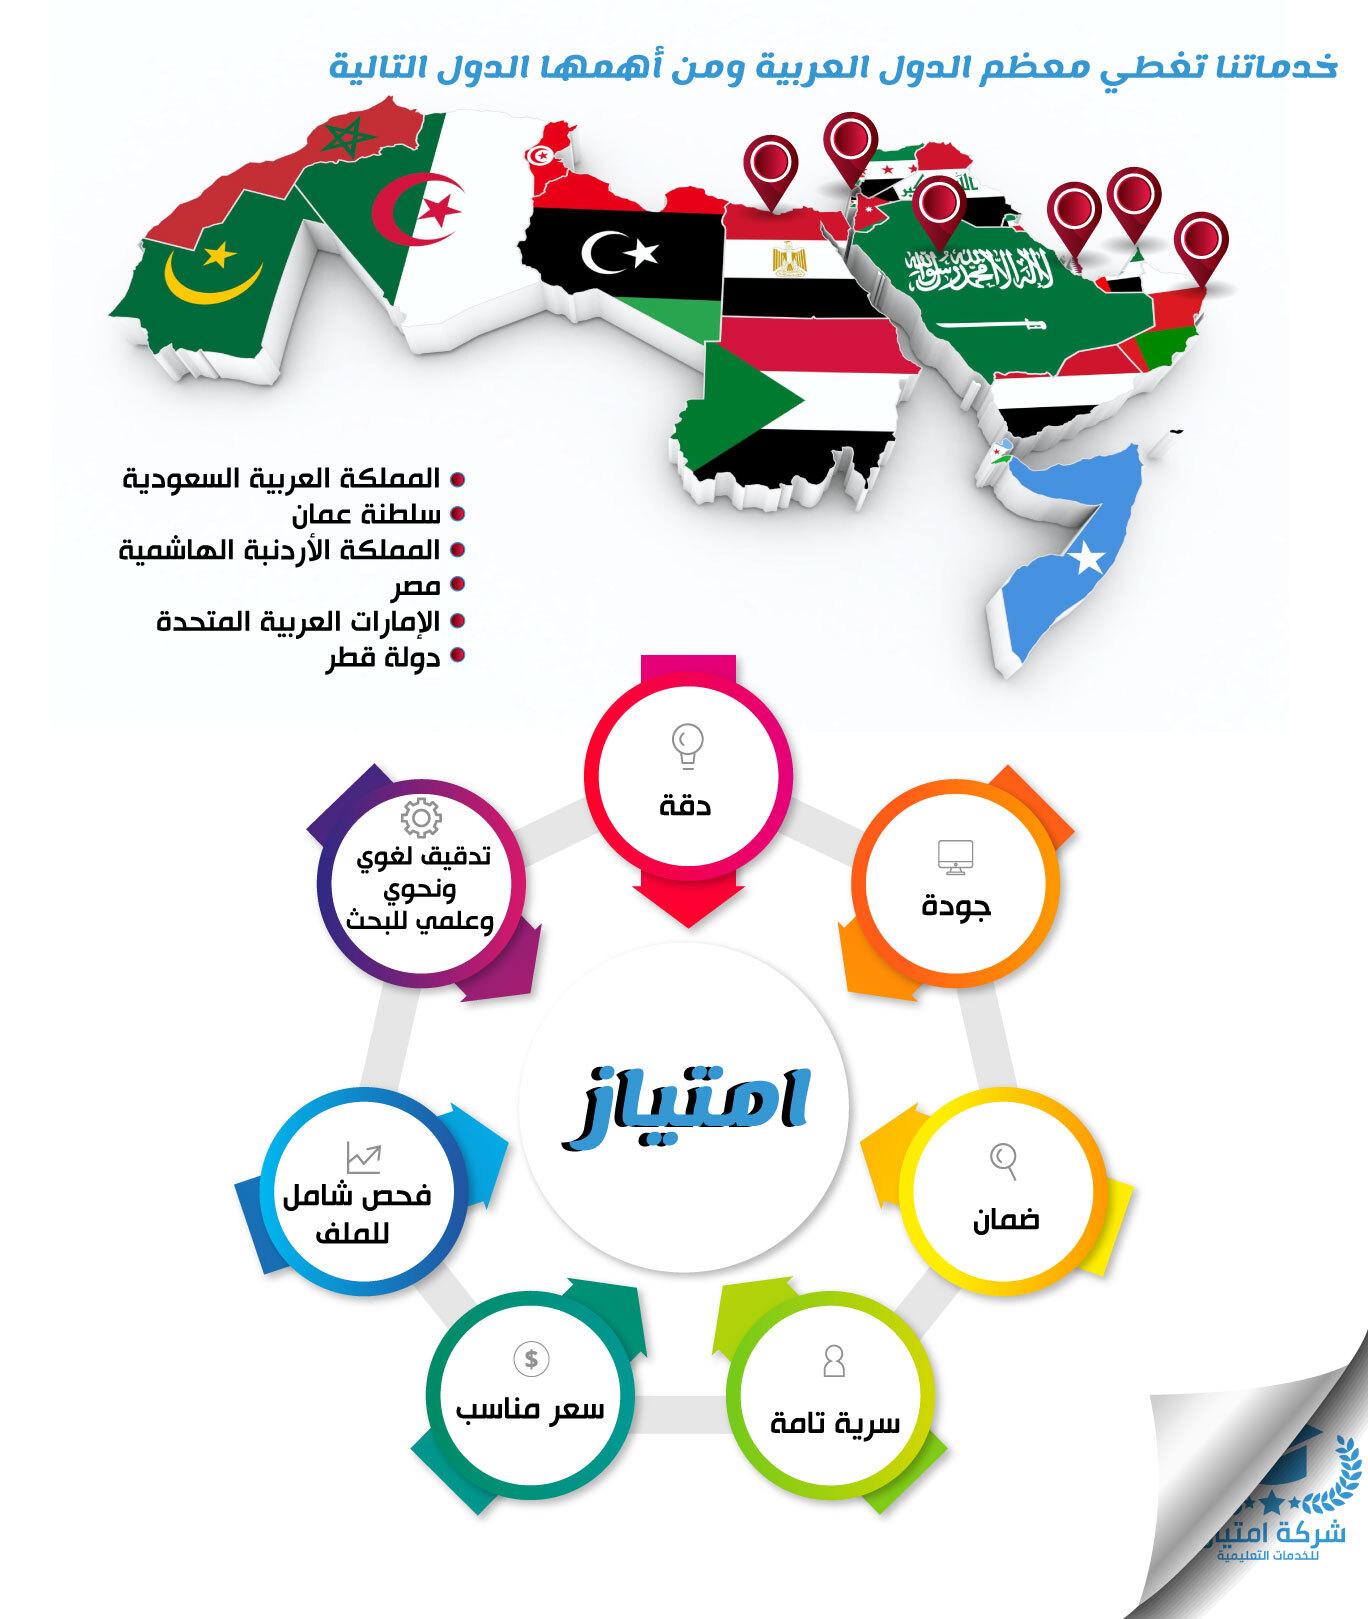 خدماتنا تغطي معظم الدول العربية ومن أهمها الدول التالية